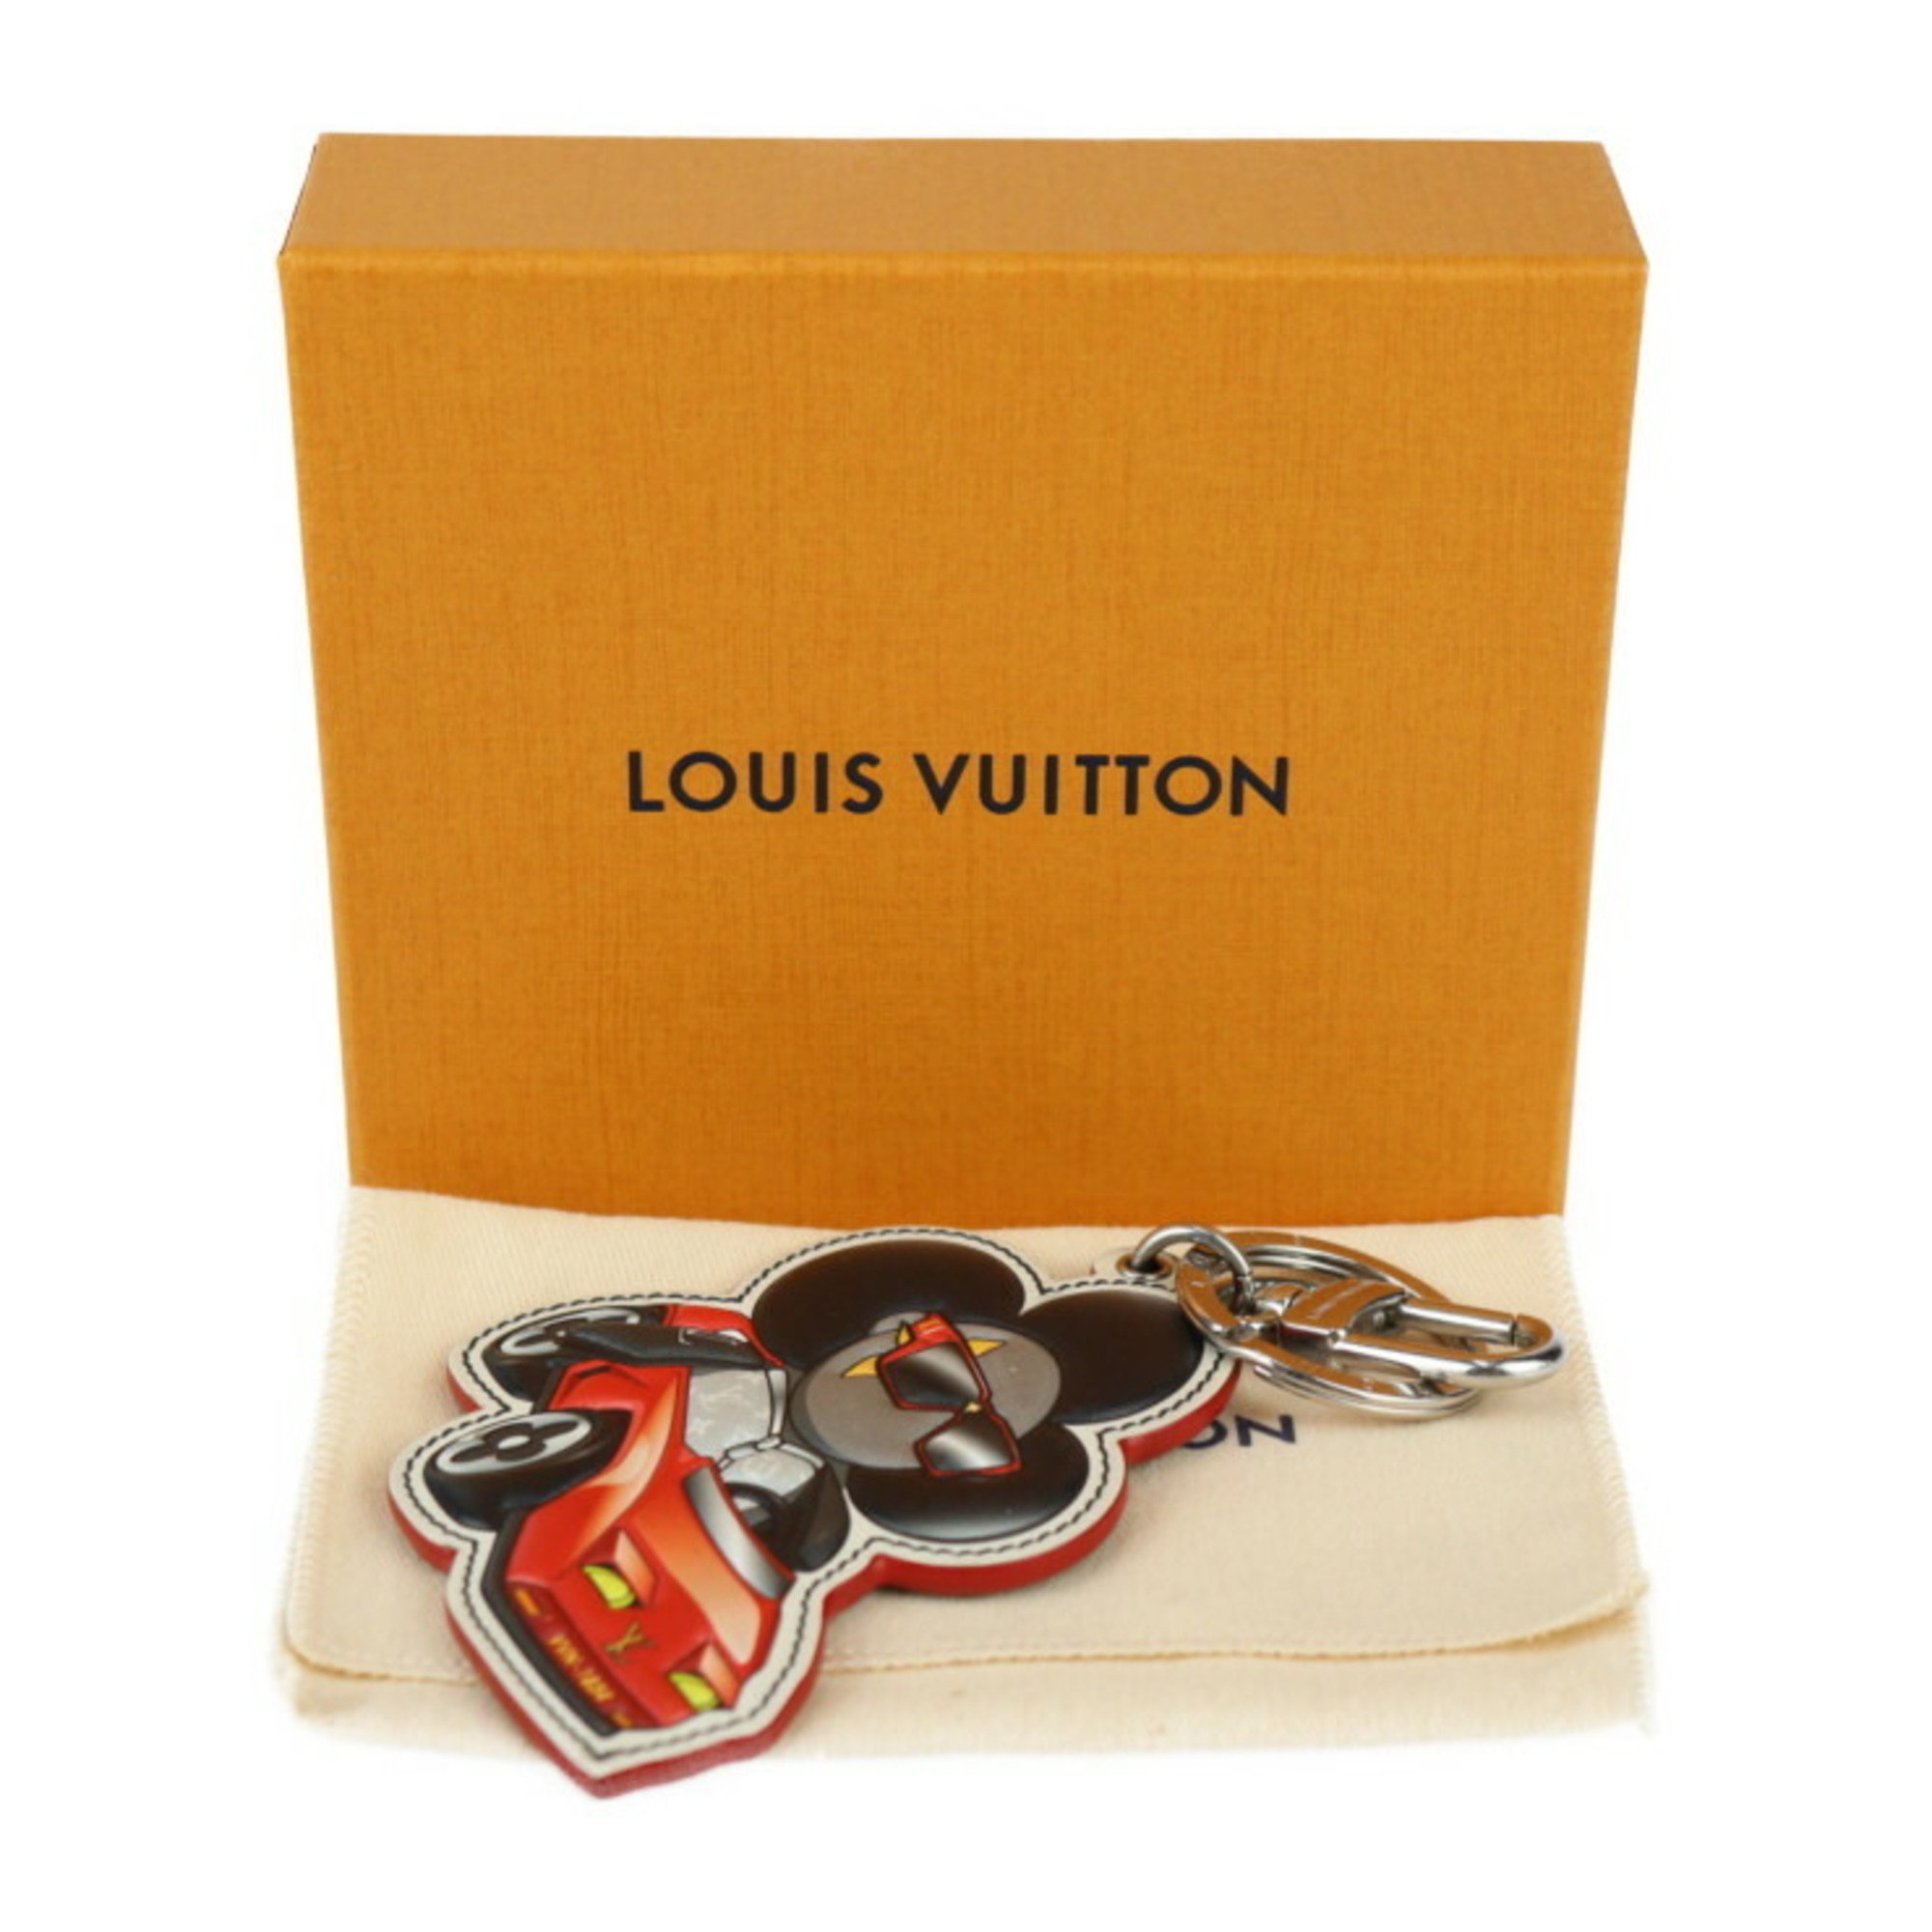 LOUIS VUITTON Louis Vuitton Sporty Car Vivienne Keychain M00960 Leather Monogram Eclipse Multicolor Black Keyring Bag Charm